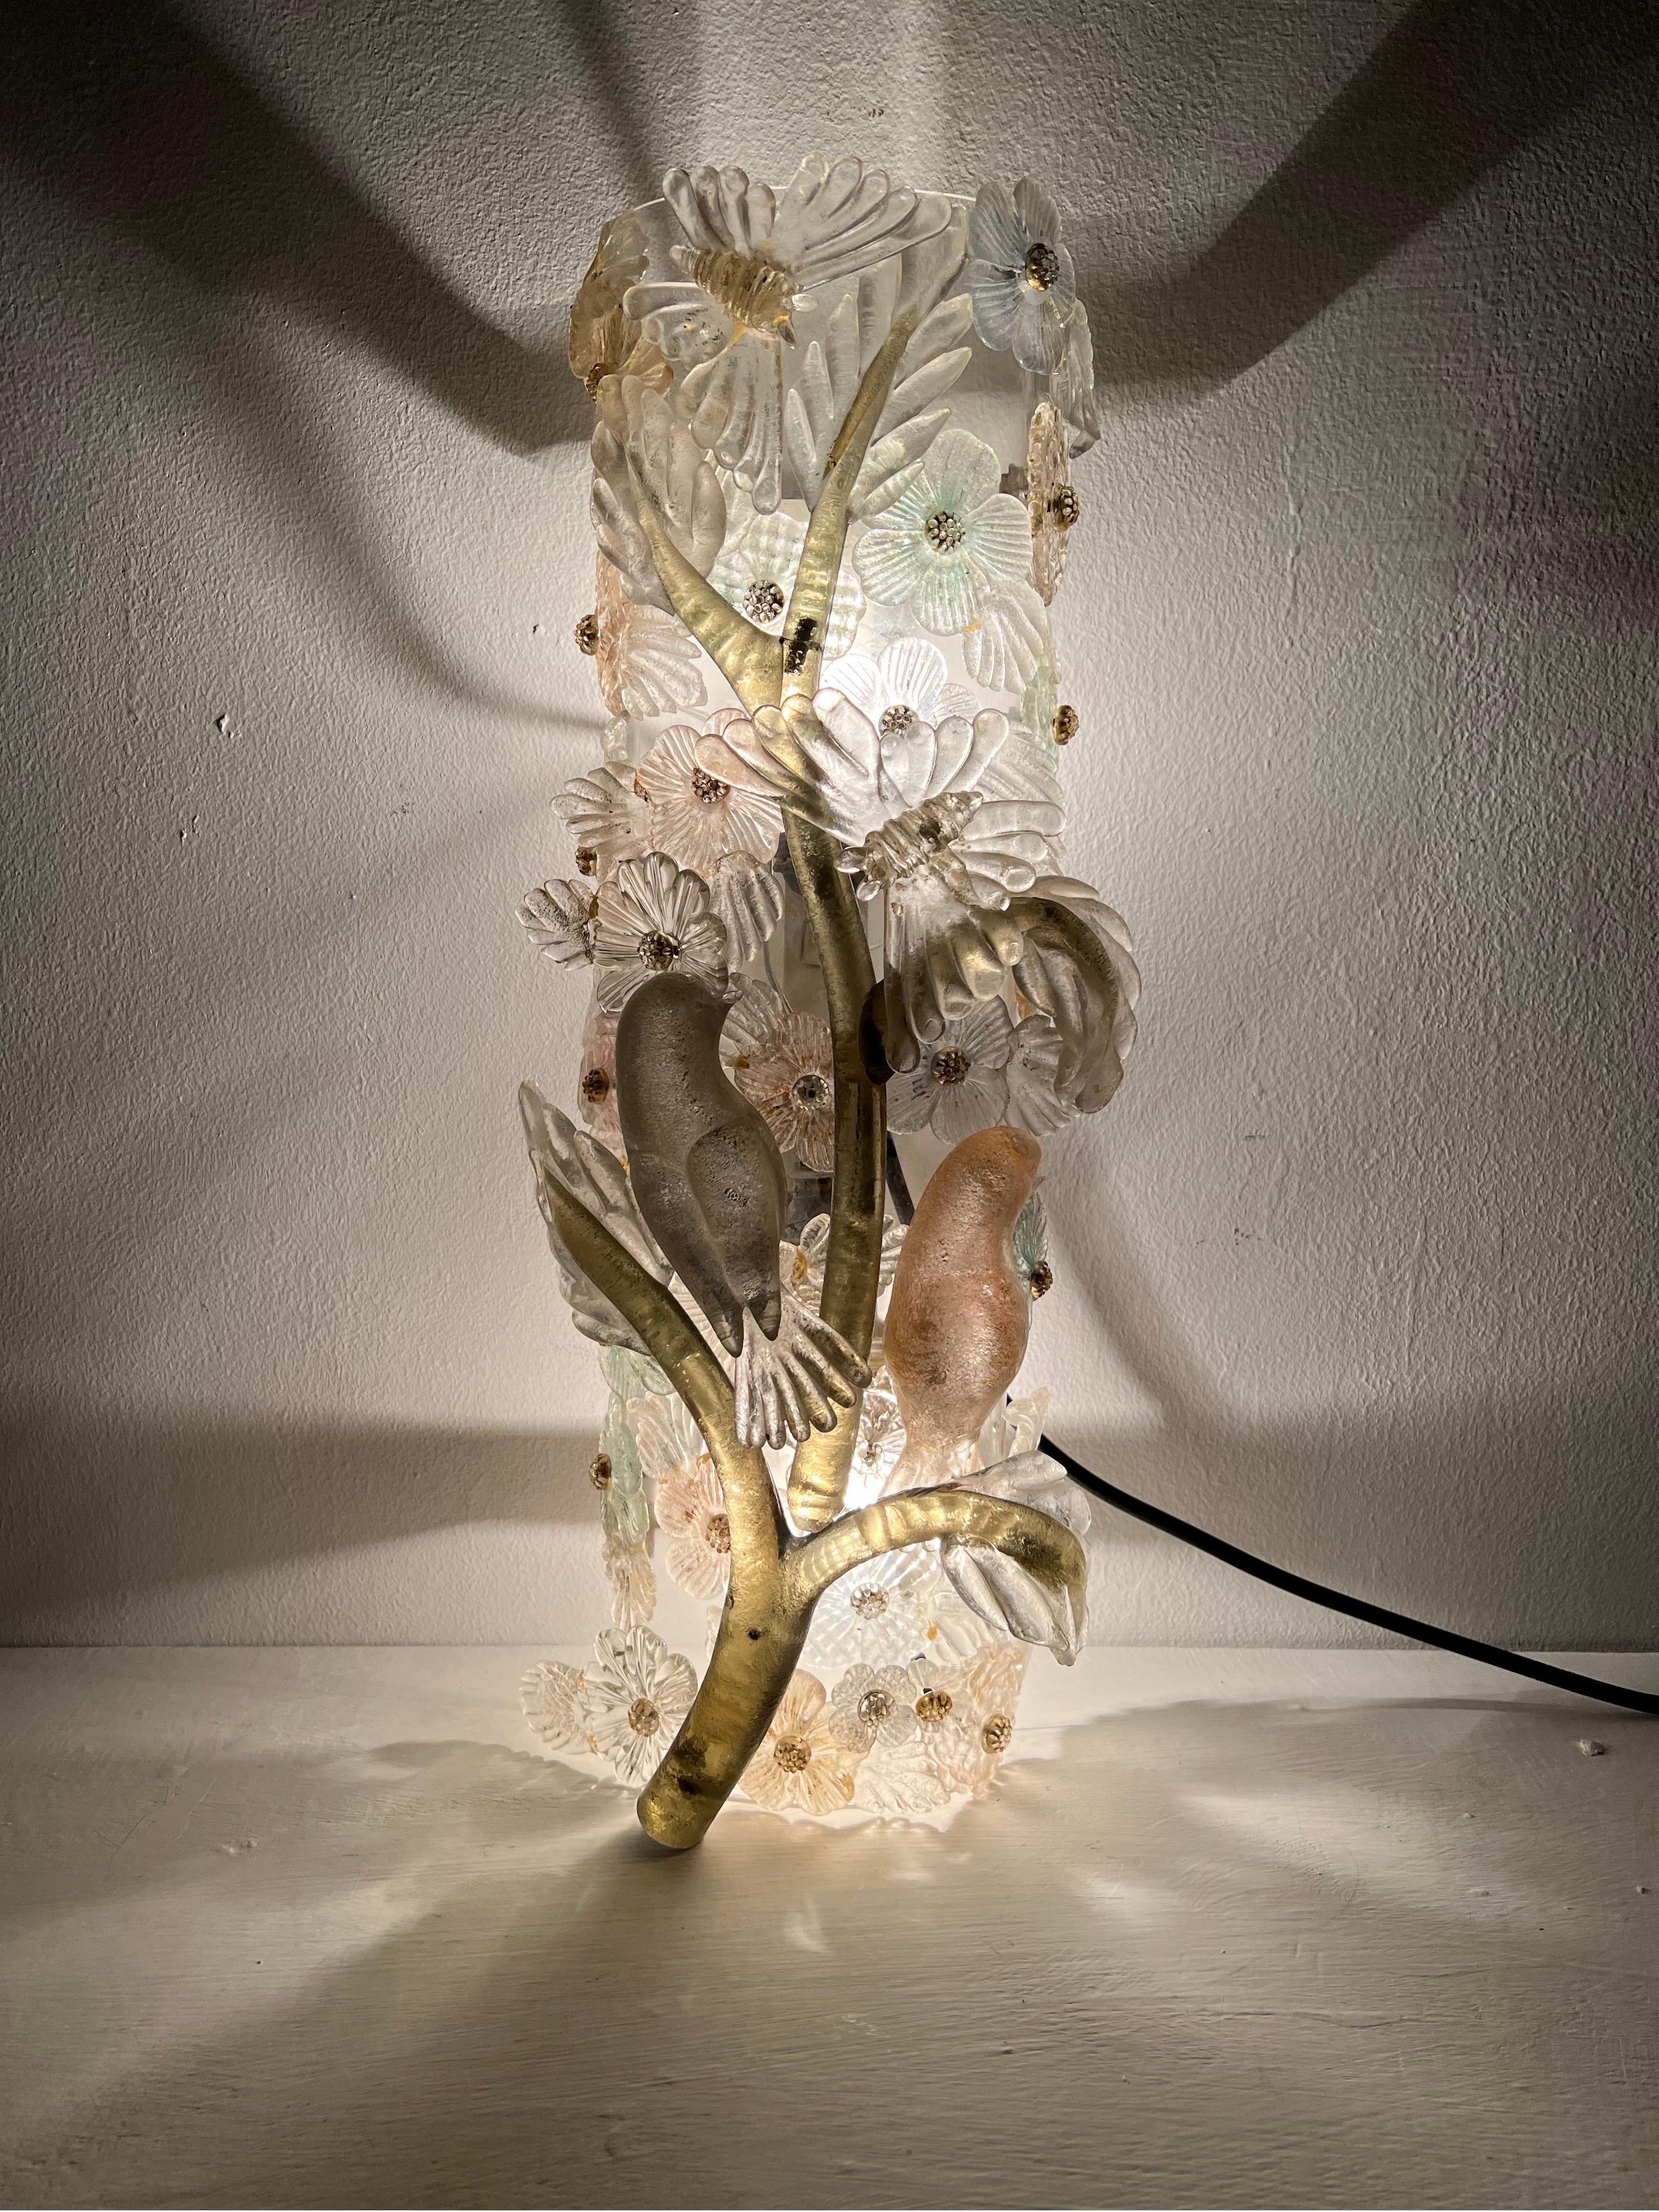 Magnifique applique figurative en verre de Murano, tout à fait unique et une véritable œuvre d'art en soi, représentant une Branch avec 2 oiseaux, 2 papillons et plusieurs styles différents de fleurs, tous sont sculptés à la main avec des feuilles